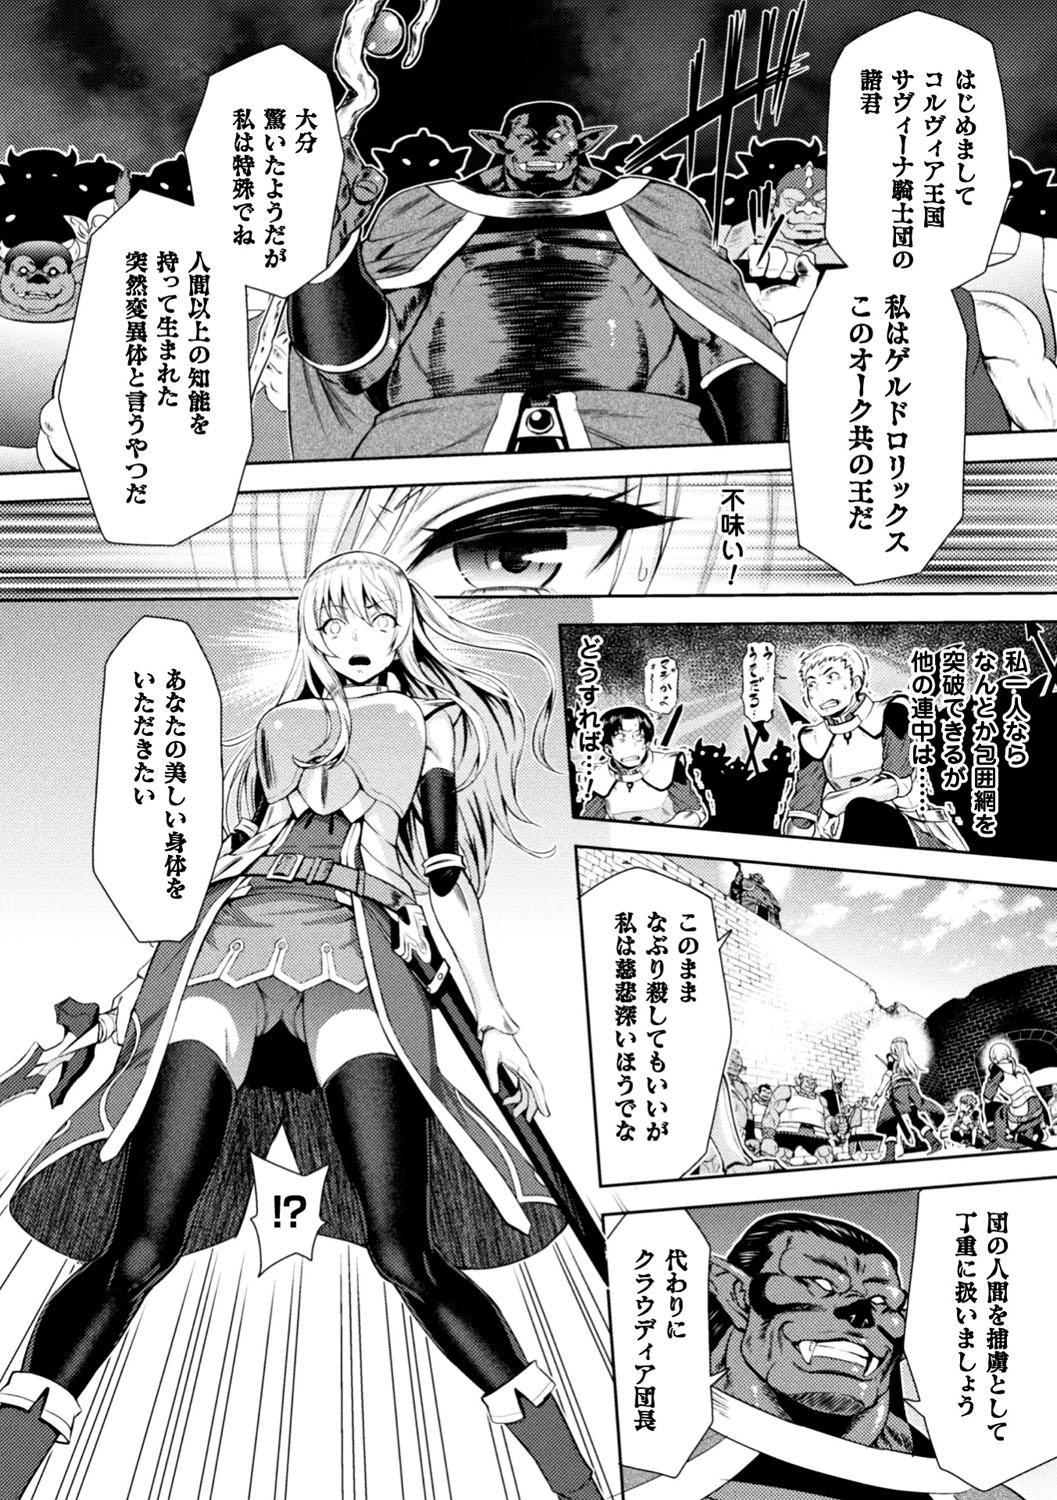 Seigi no Heroine Kangoku File Vol. 13 11